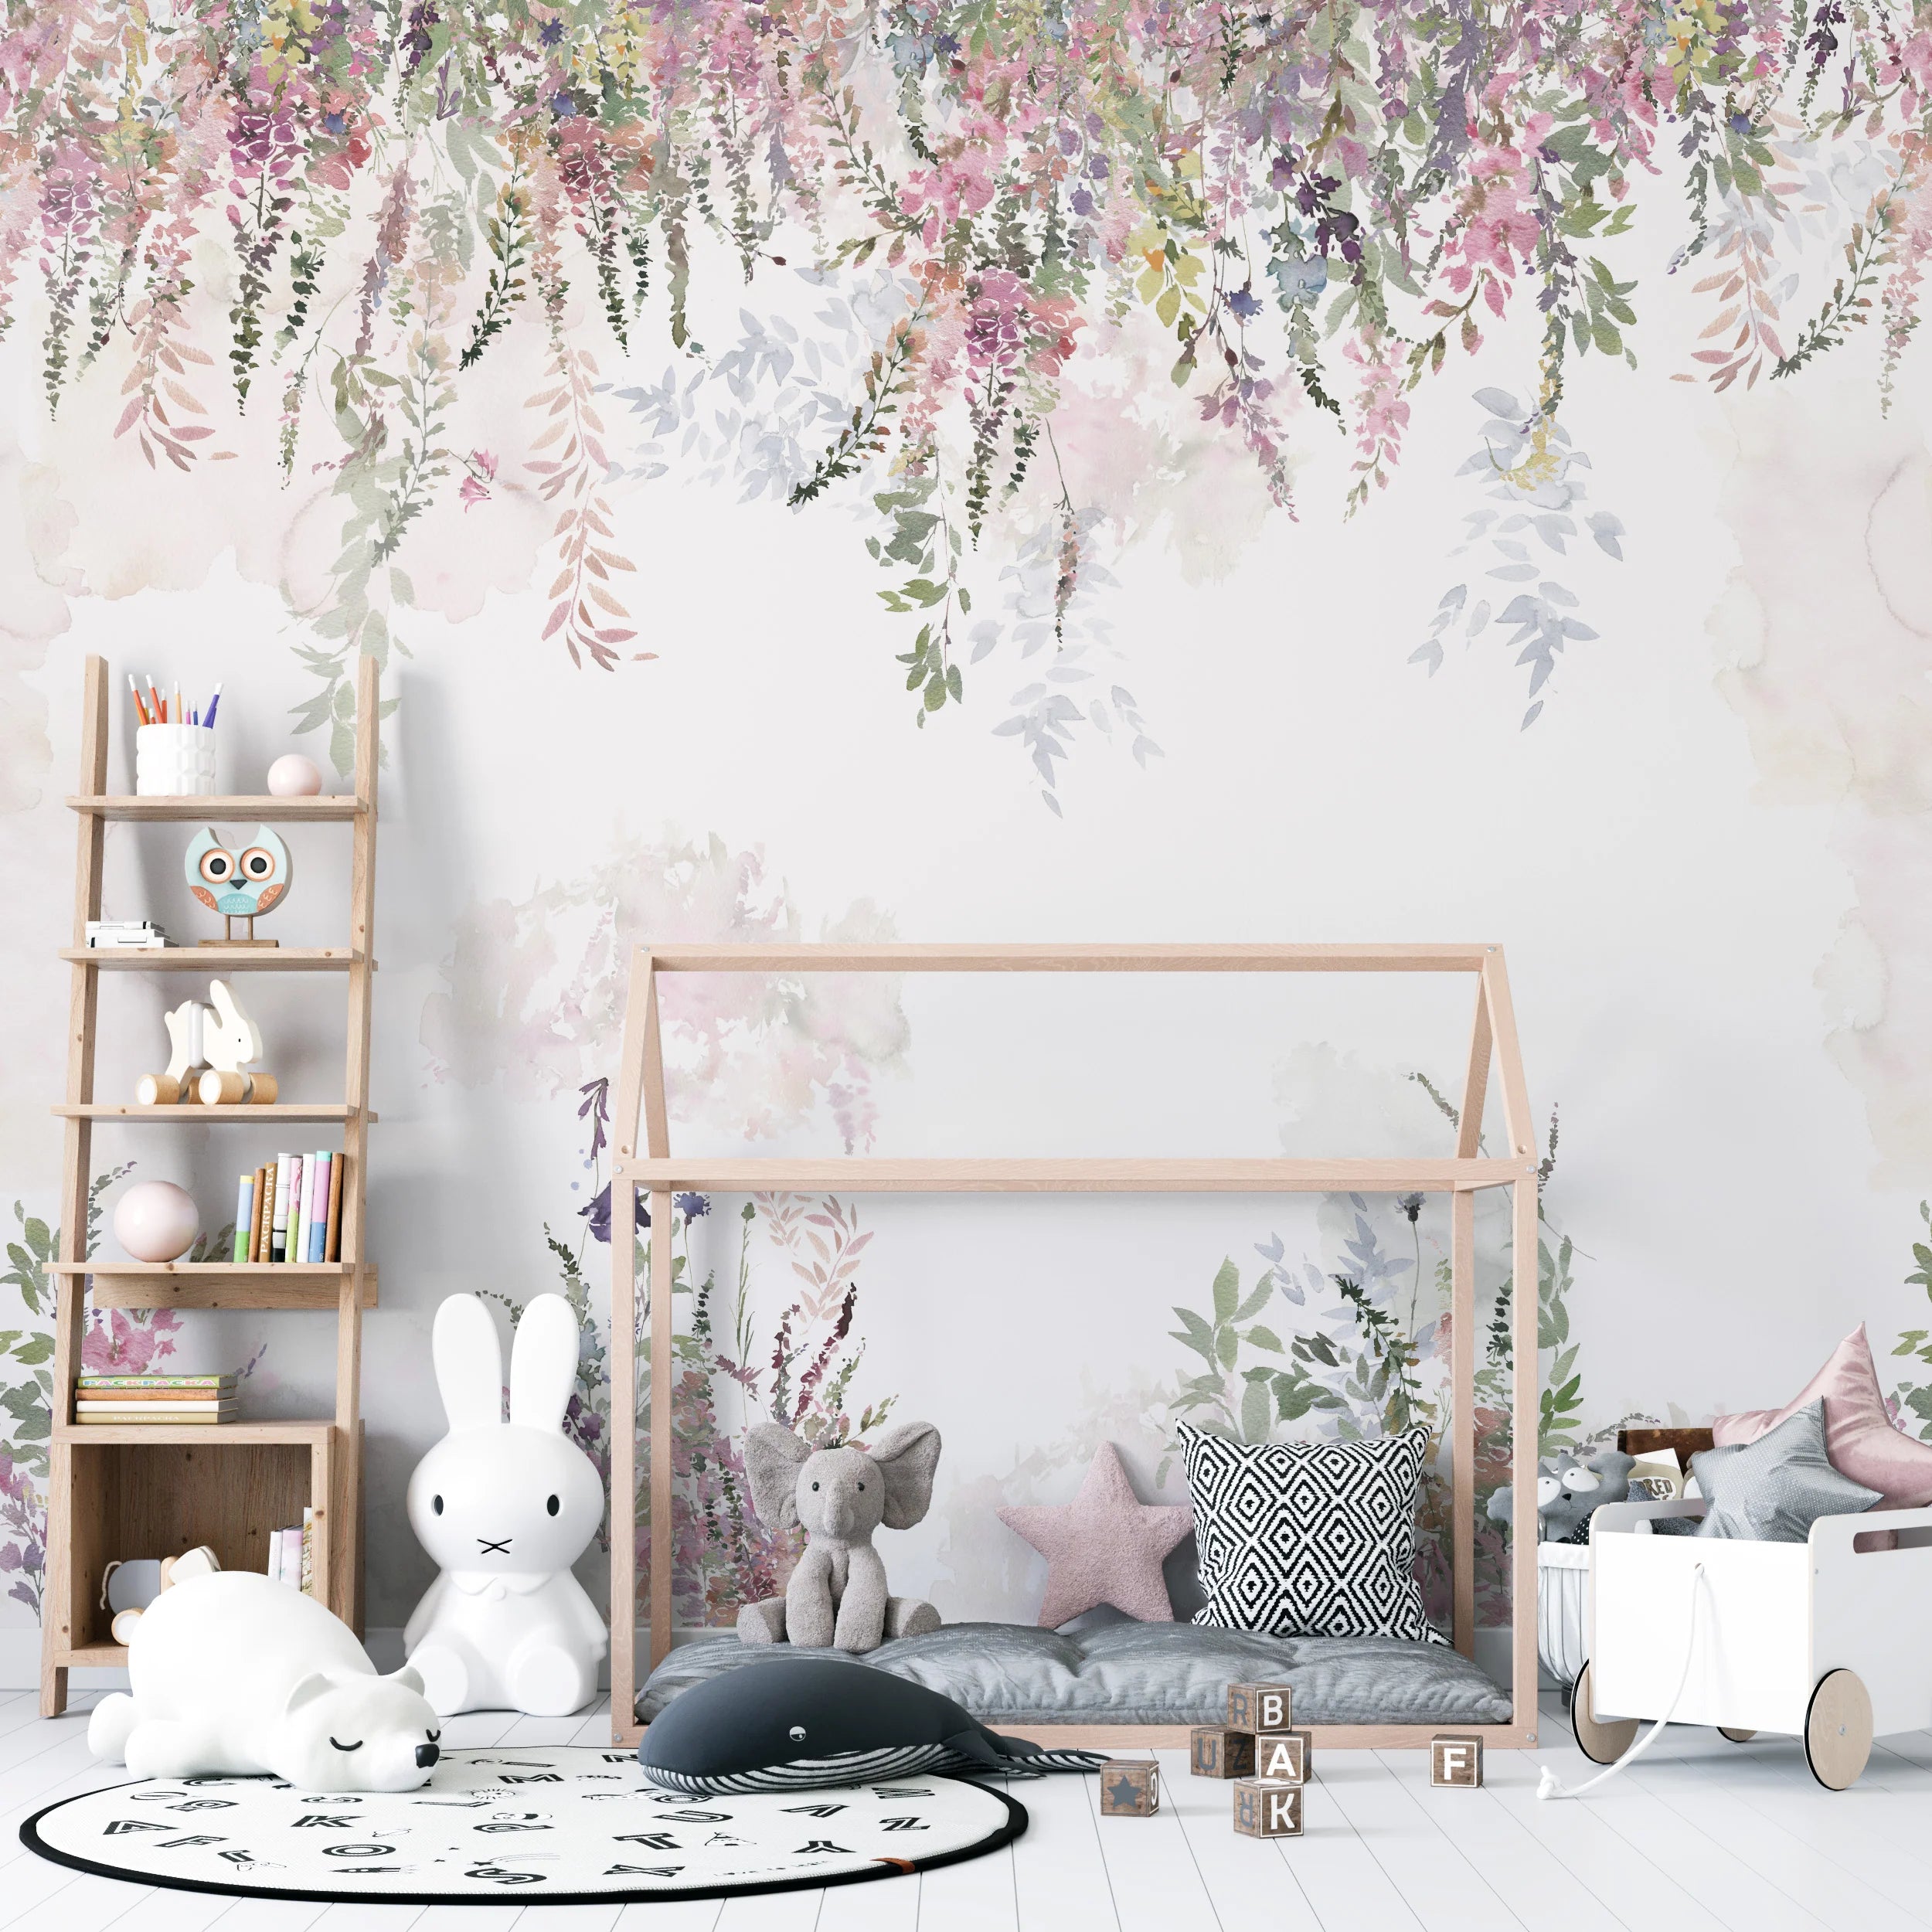 Fleurs en papier blanc, décoration murale fleurs en papier pour chambre de  bébé, décoration fleurs en